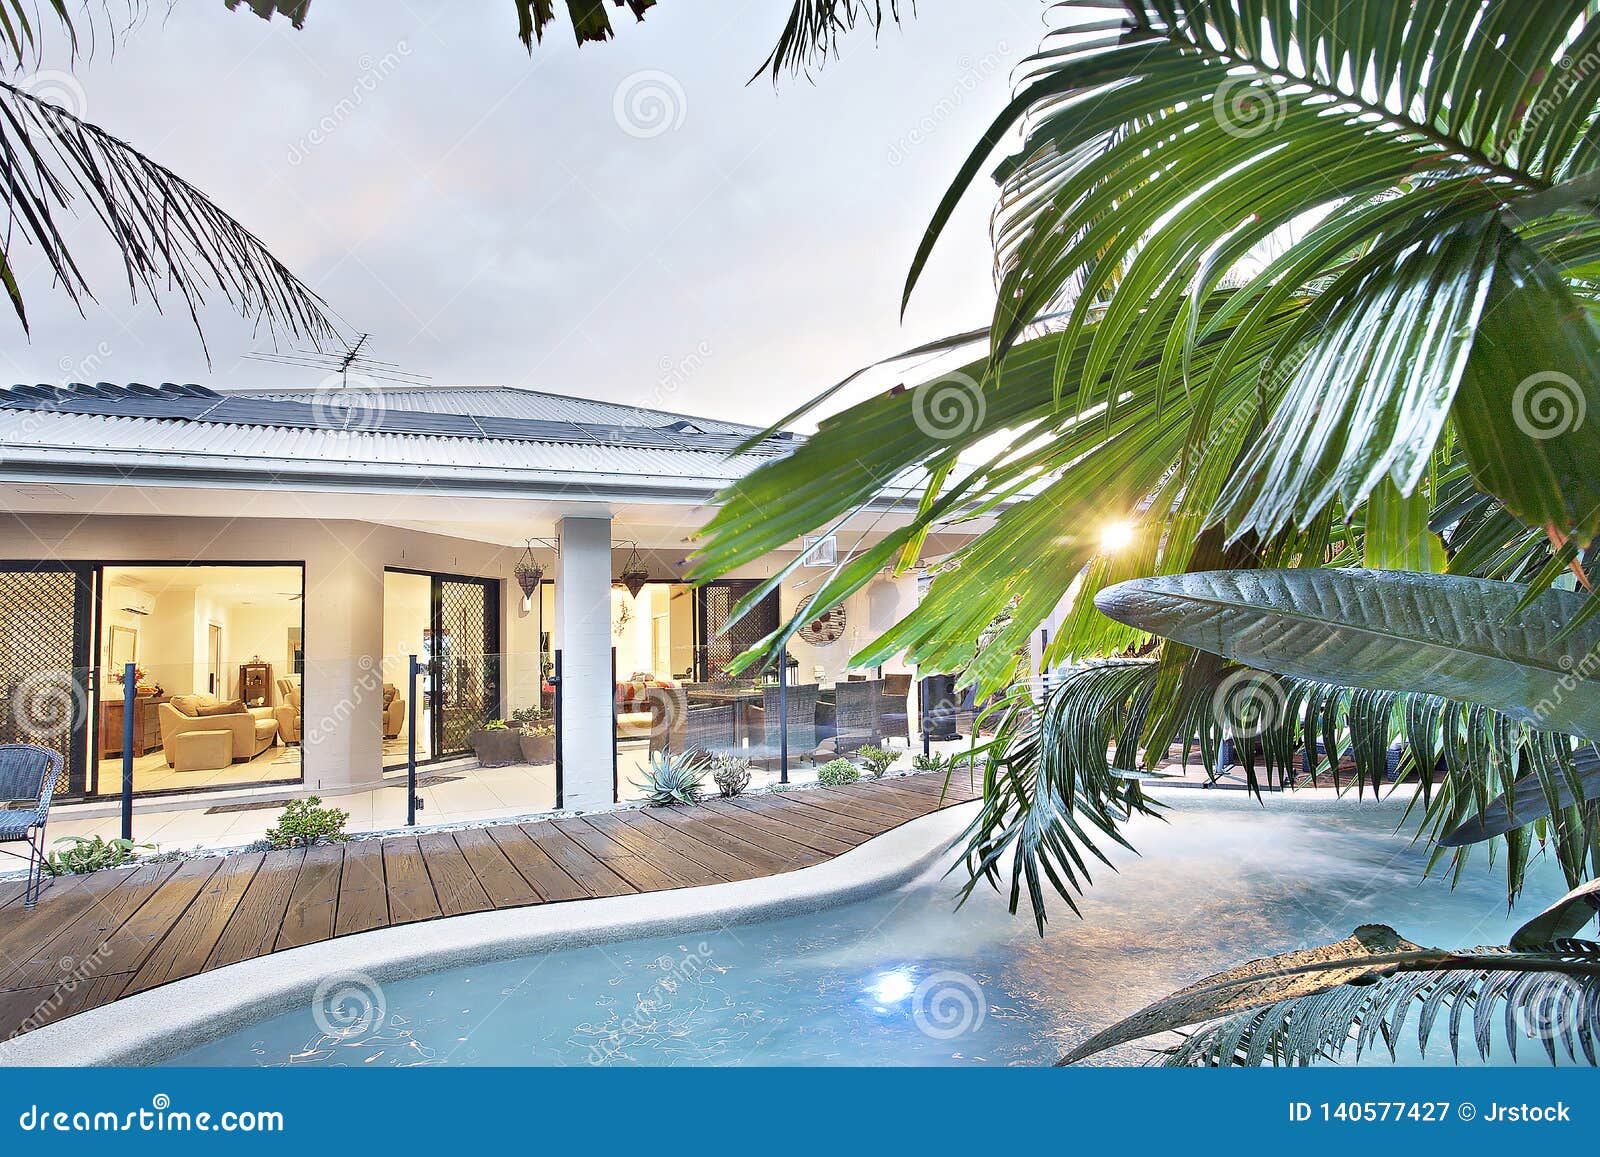 haai Zeeanemoon Persoonlijk Luxe Zwembad Dichtbij Moderne Flat Stock Afbeelding - Image of luxe,  modern: 140577427